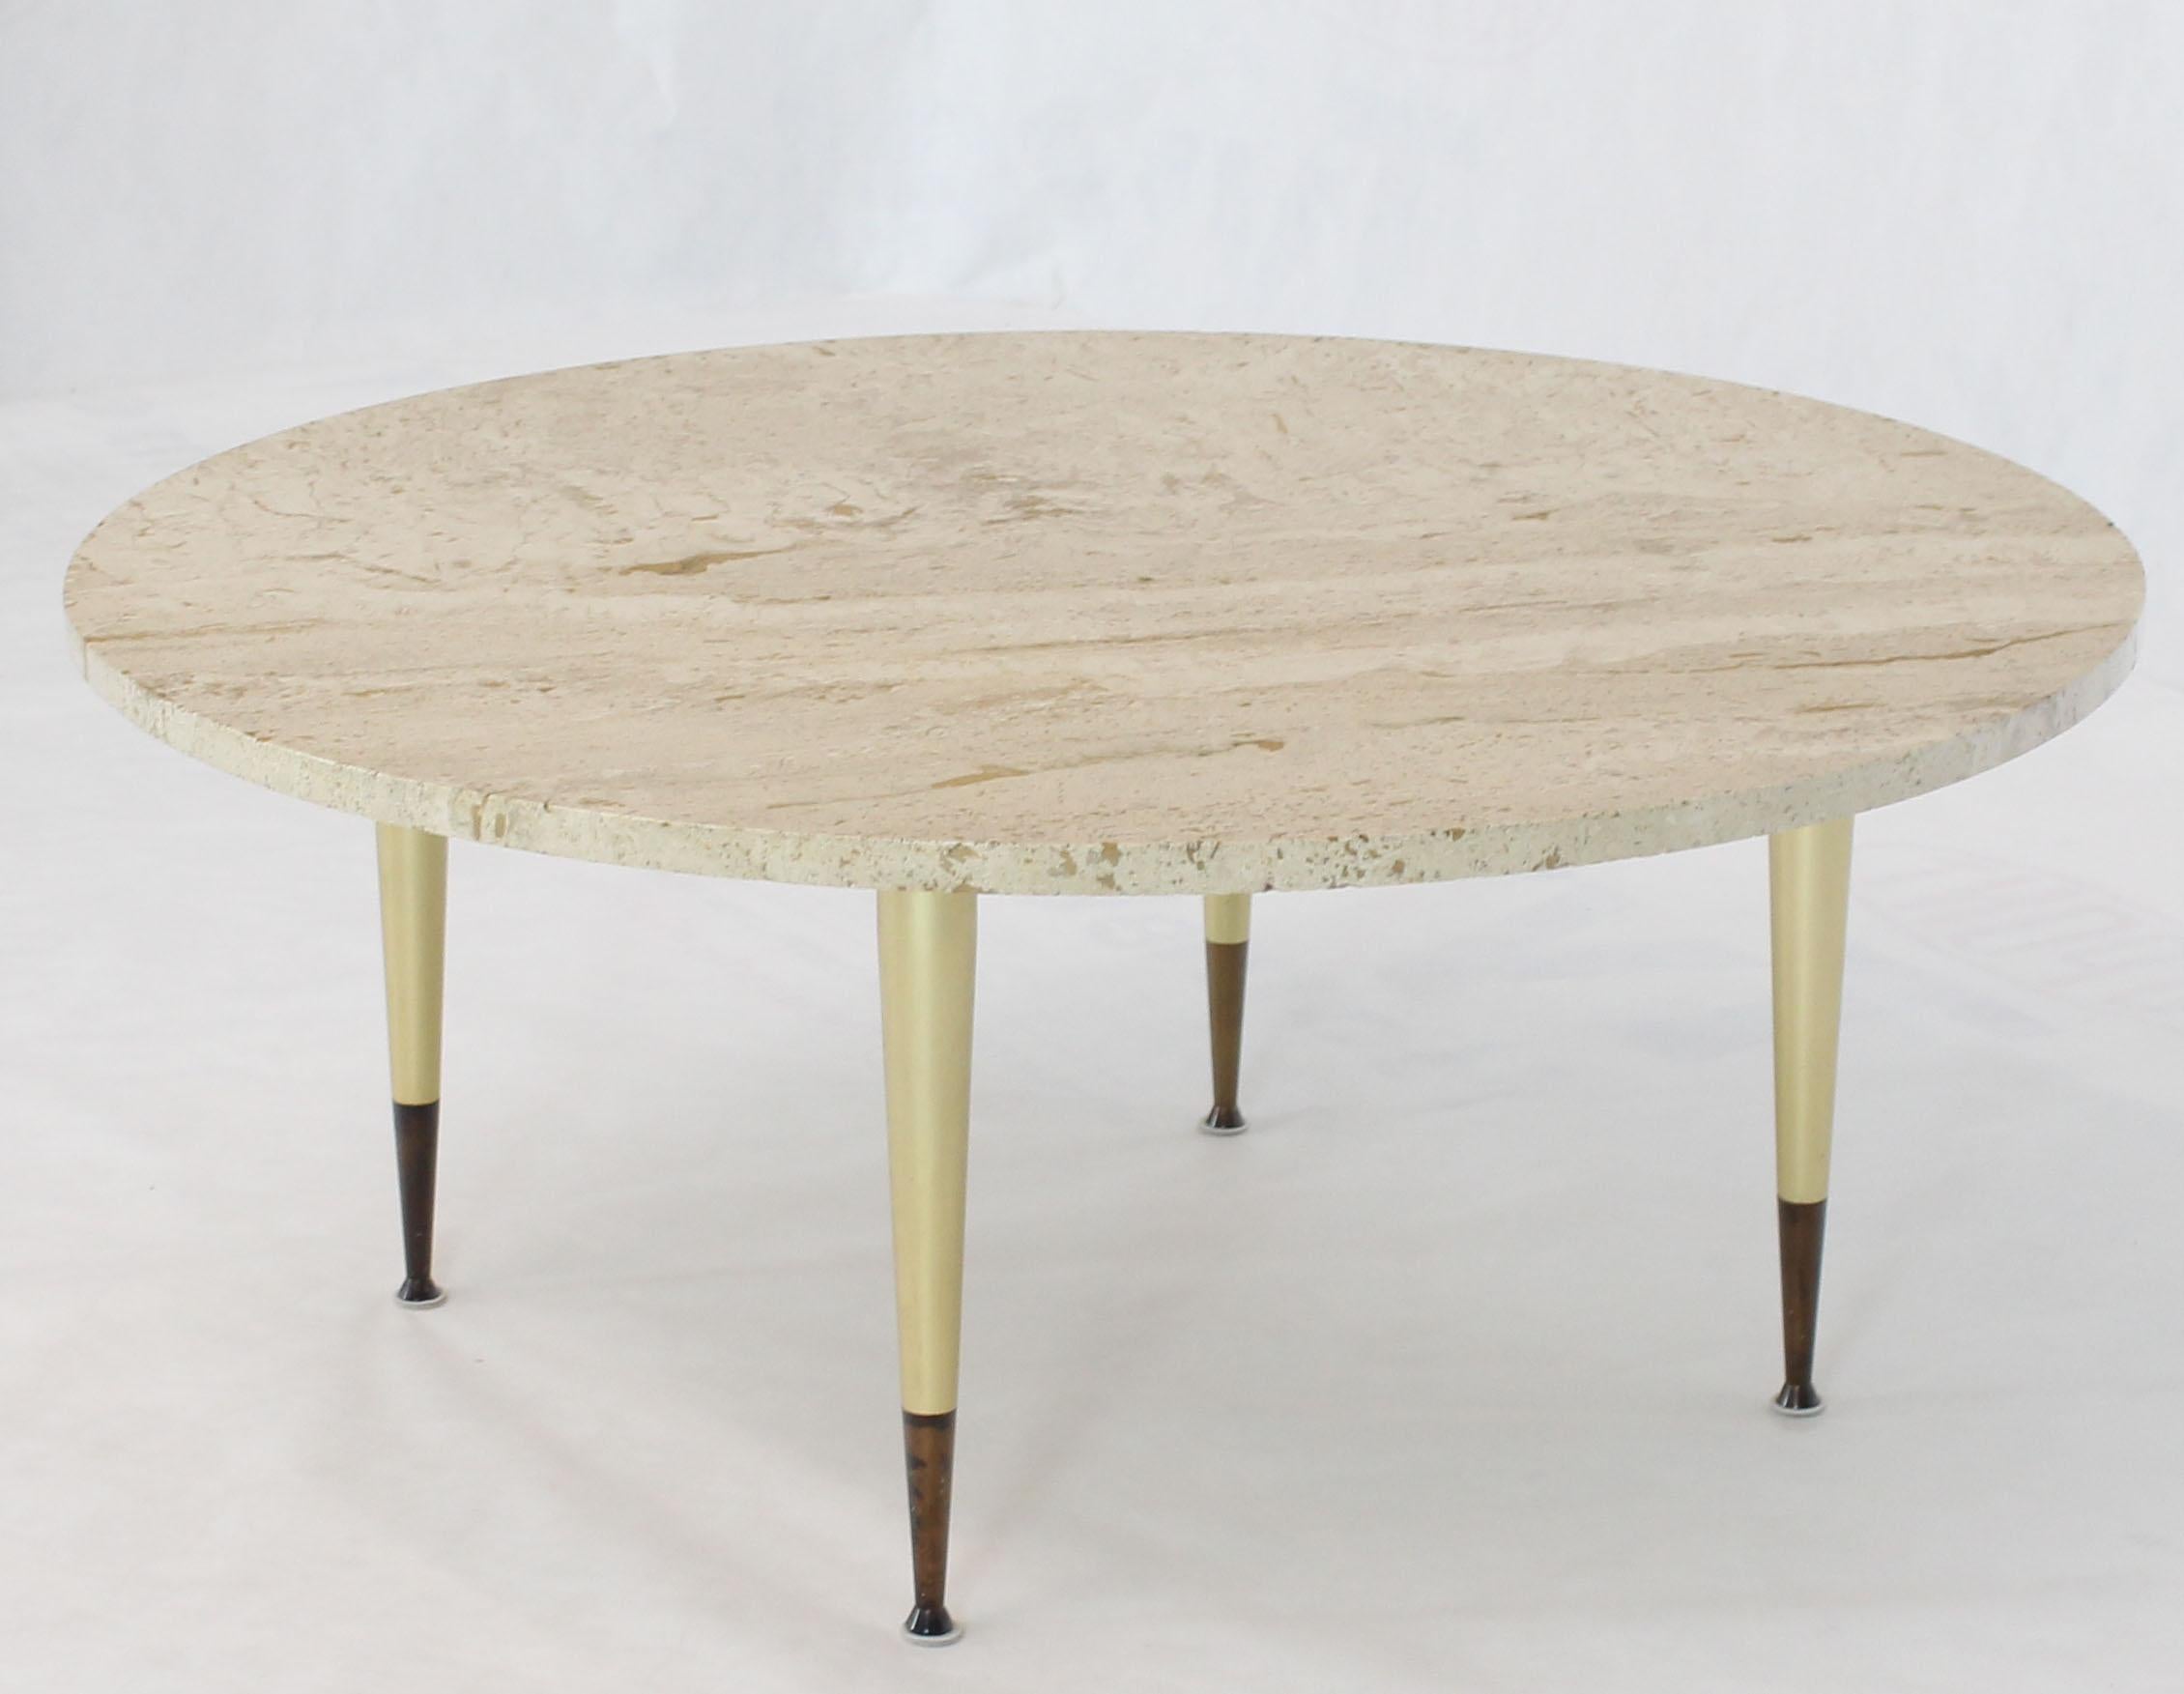 Table basse en travertin d'allure Gio Ponti, de style moderne italien du milieu du siècle, sur une base en métal fin.